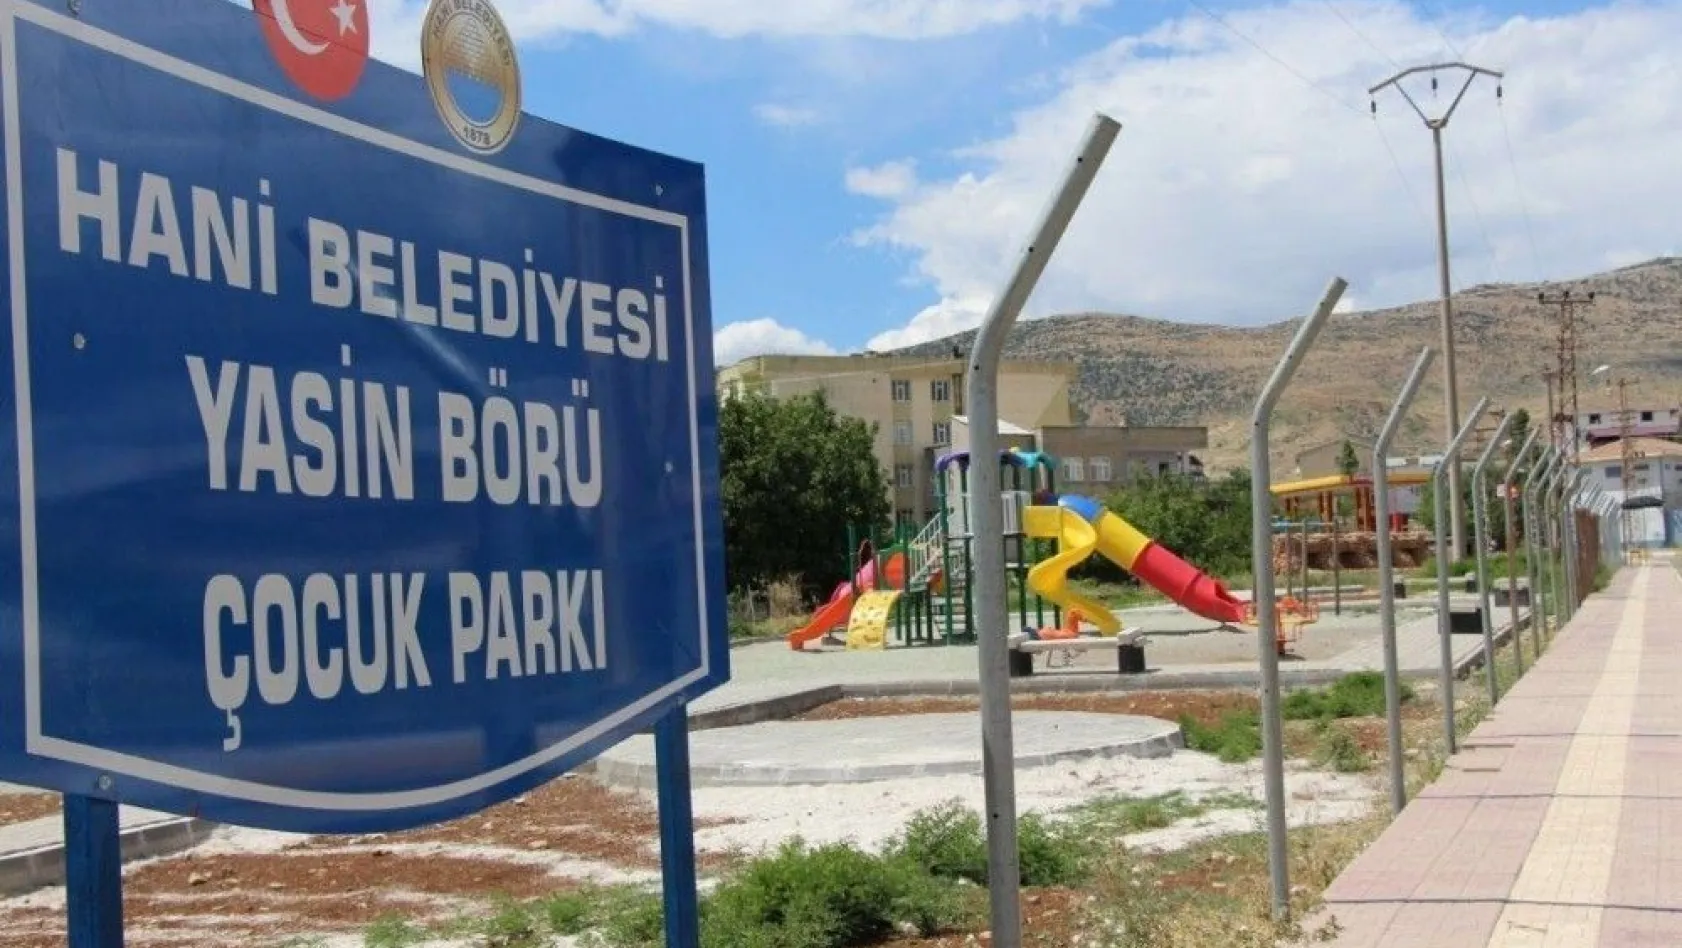 Hani Belediyesi, çocuk parklarına çocuk şehitlerin ismini verdi
